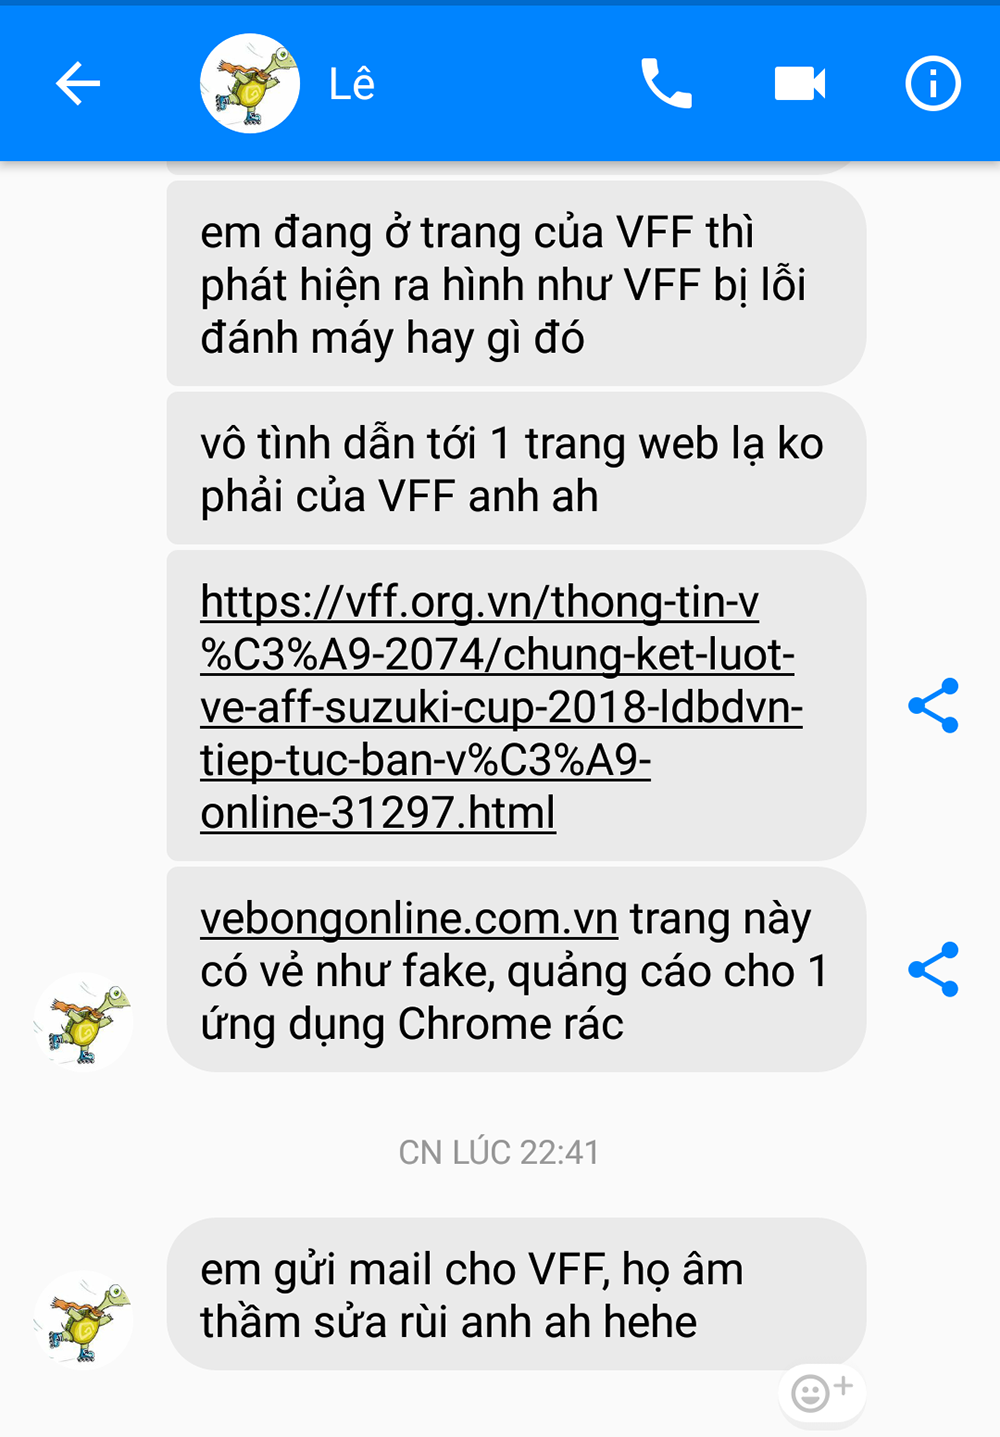 Nick “Hiếu Lê” cho biết trang vebongonline.com.vn là fake.